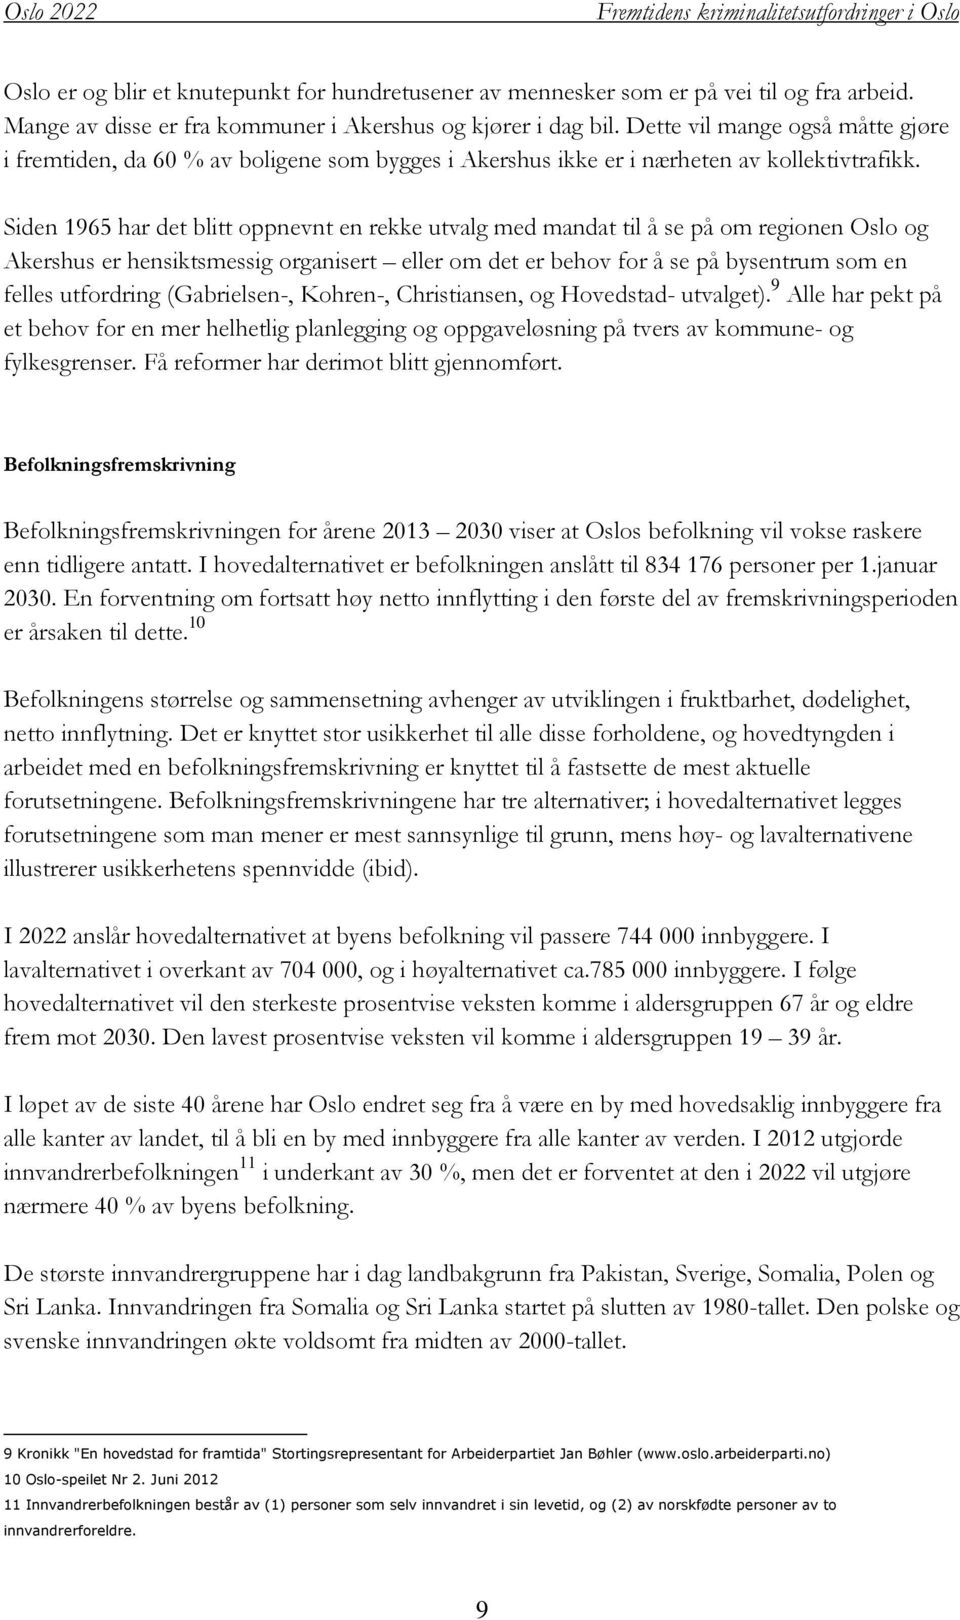 Siden 1965 har det blitt oppnevnt en rekke utvalg med mandat til å se på om regionen Oslo og Akershus er hensiktsmessig organisert eller om det er behov for å se på bysentrum som en felles utfordring